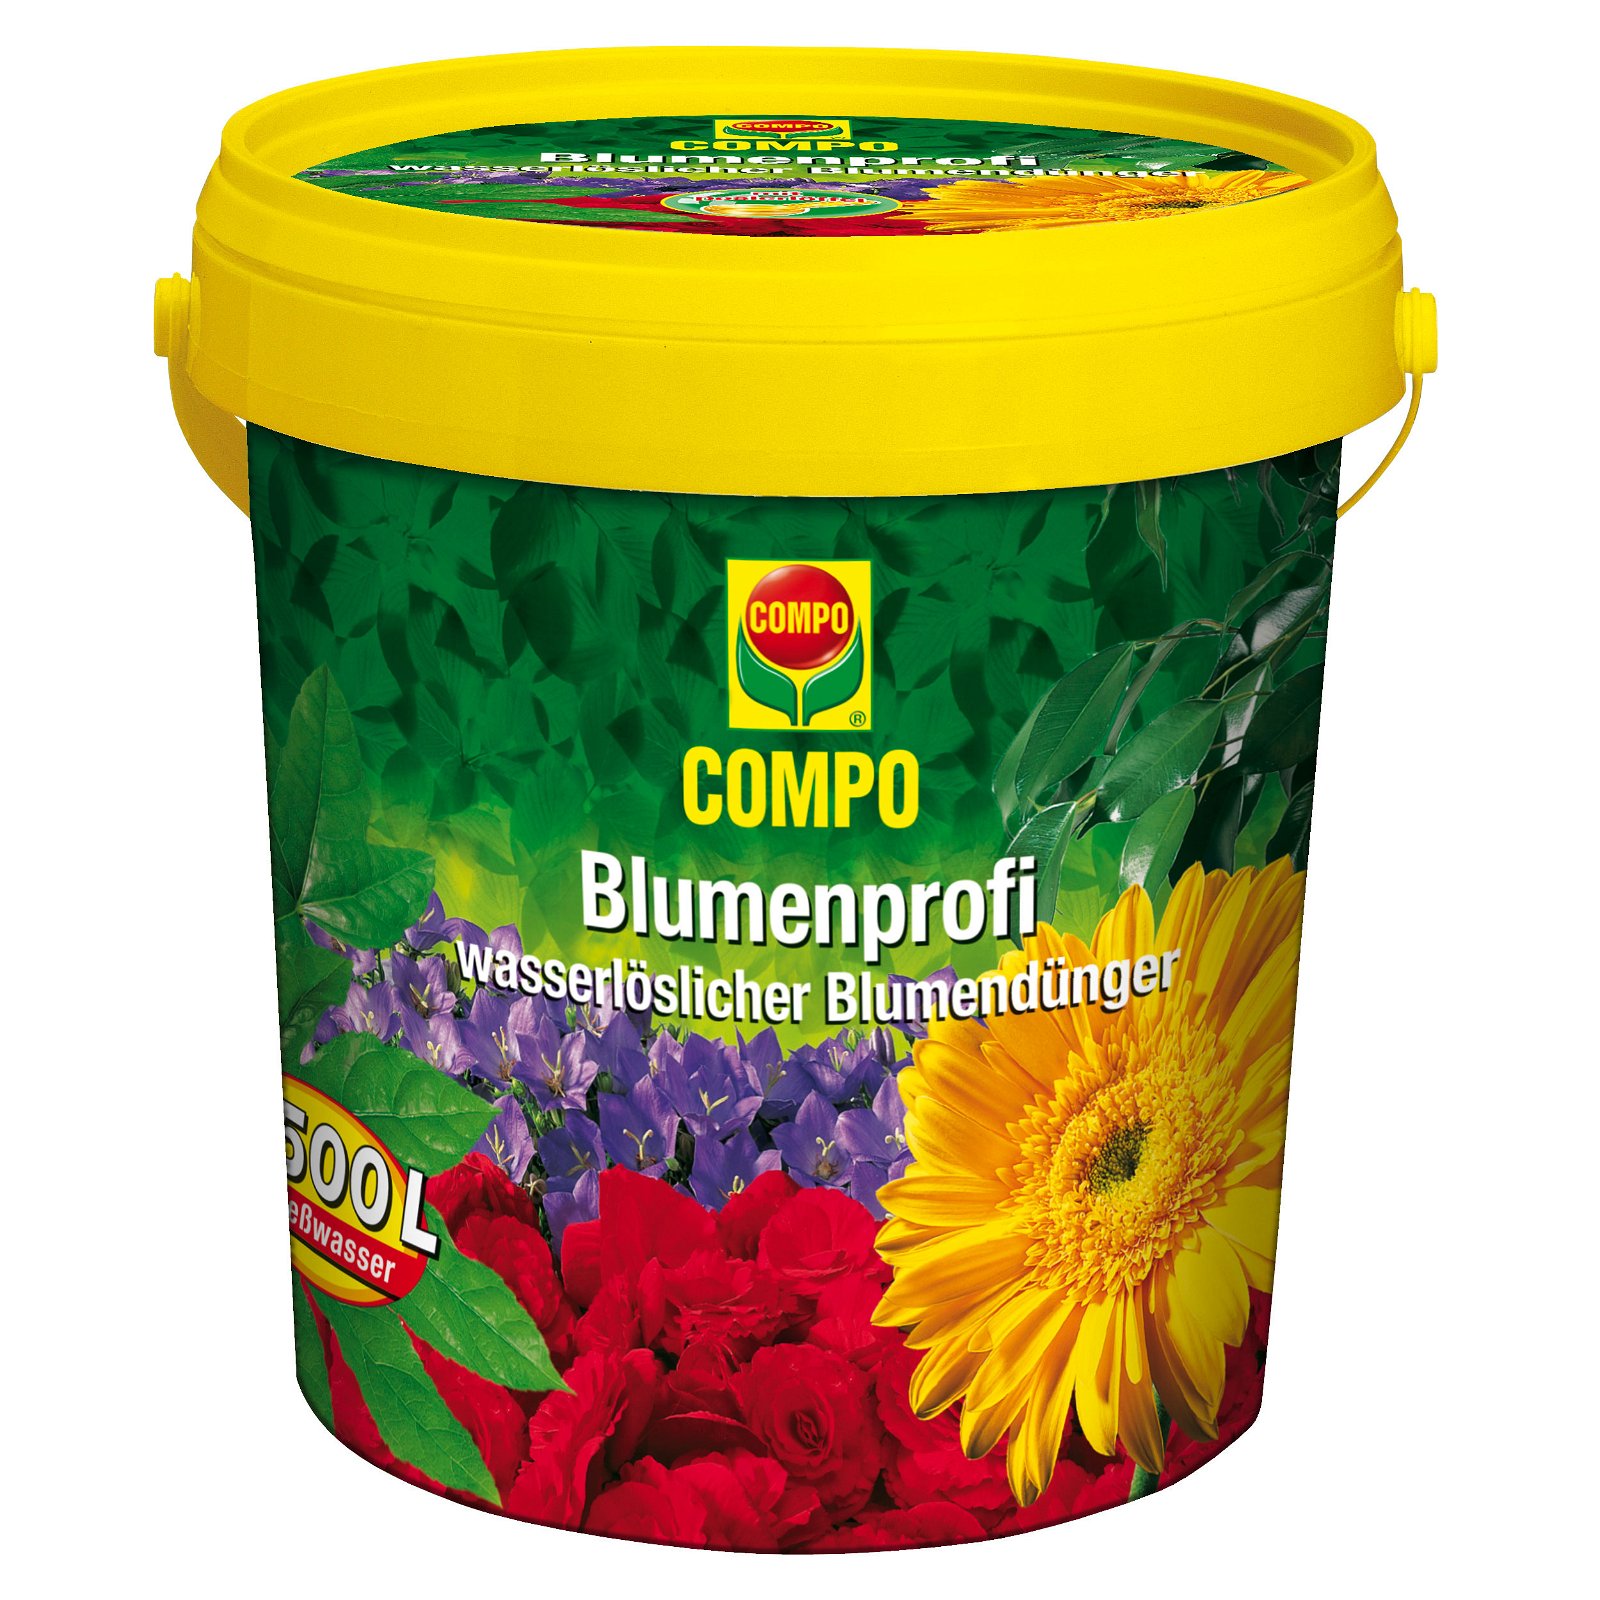 Compo Blumenprofi, 1,2 kg